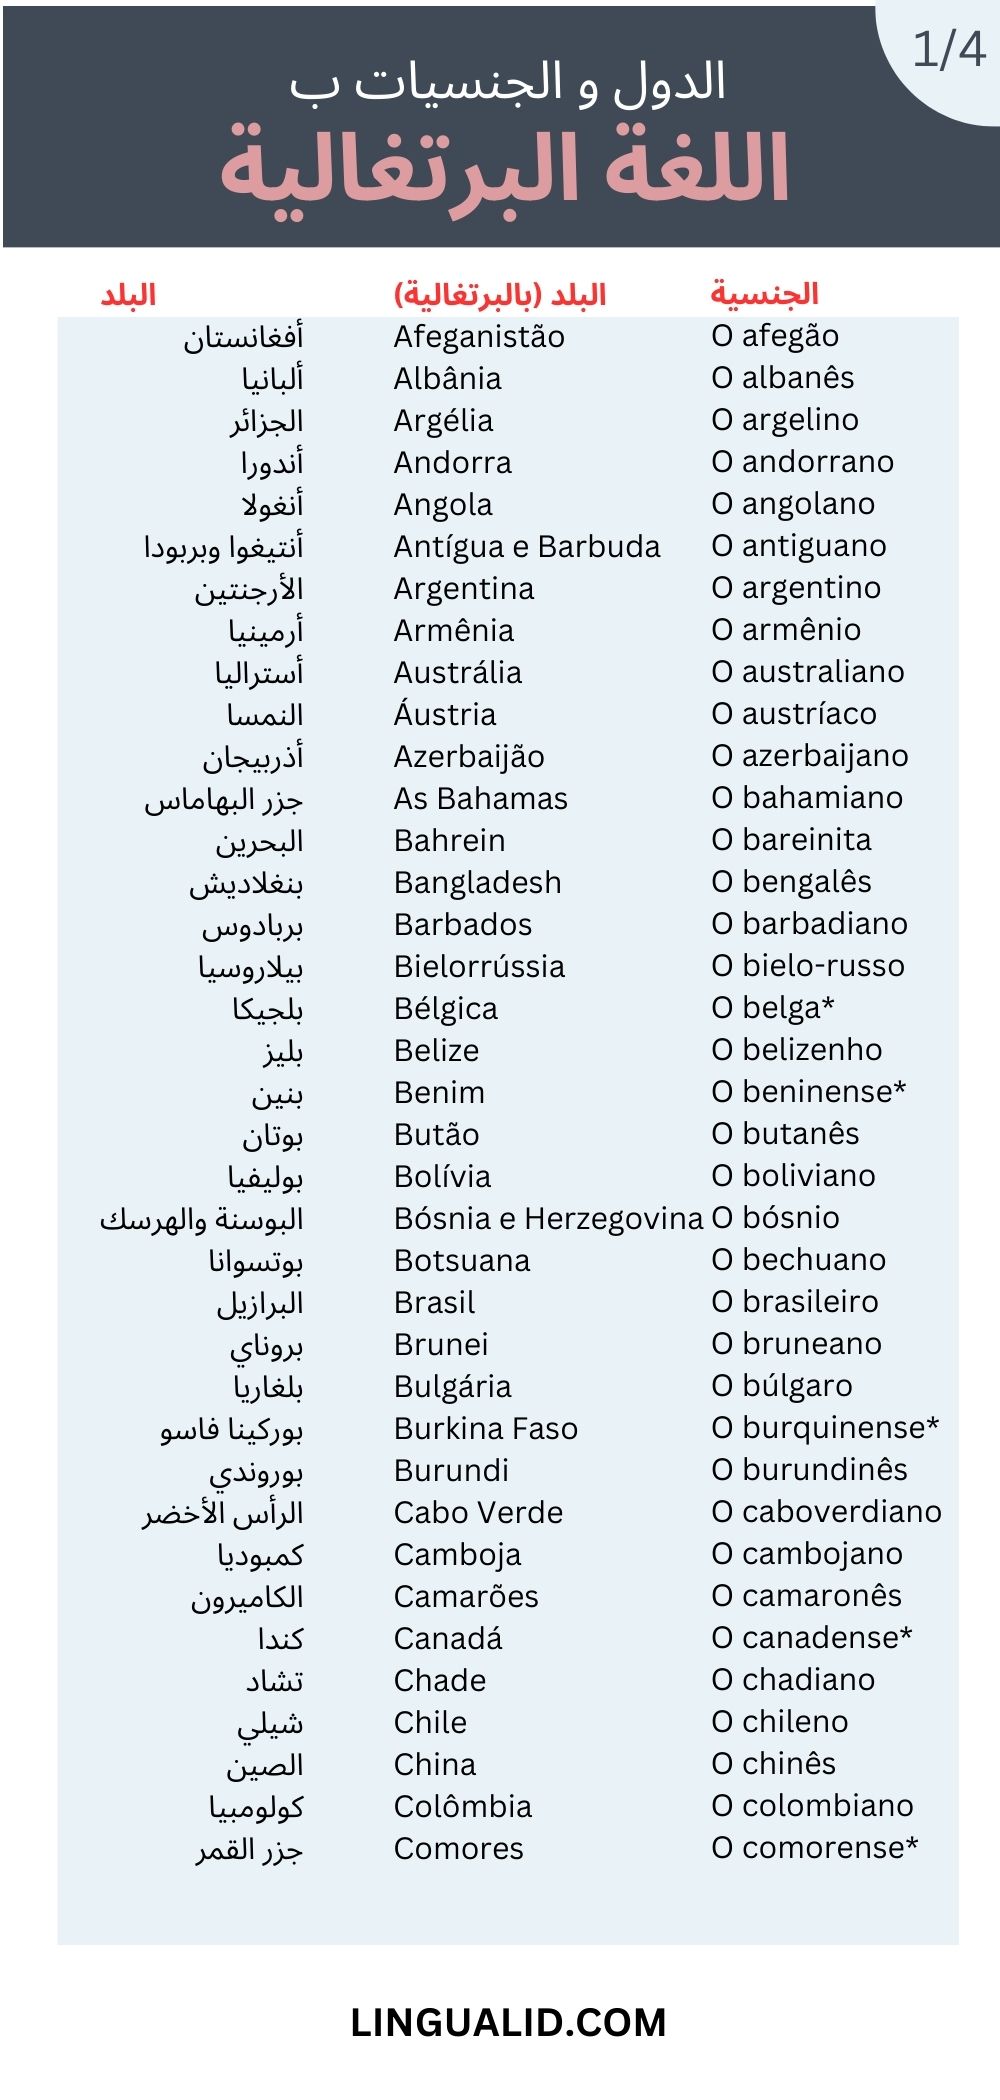 الدول و الجنسيات اللغة البرتغالية البلدان و القوميات